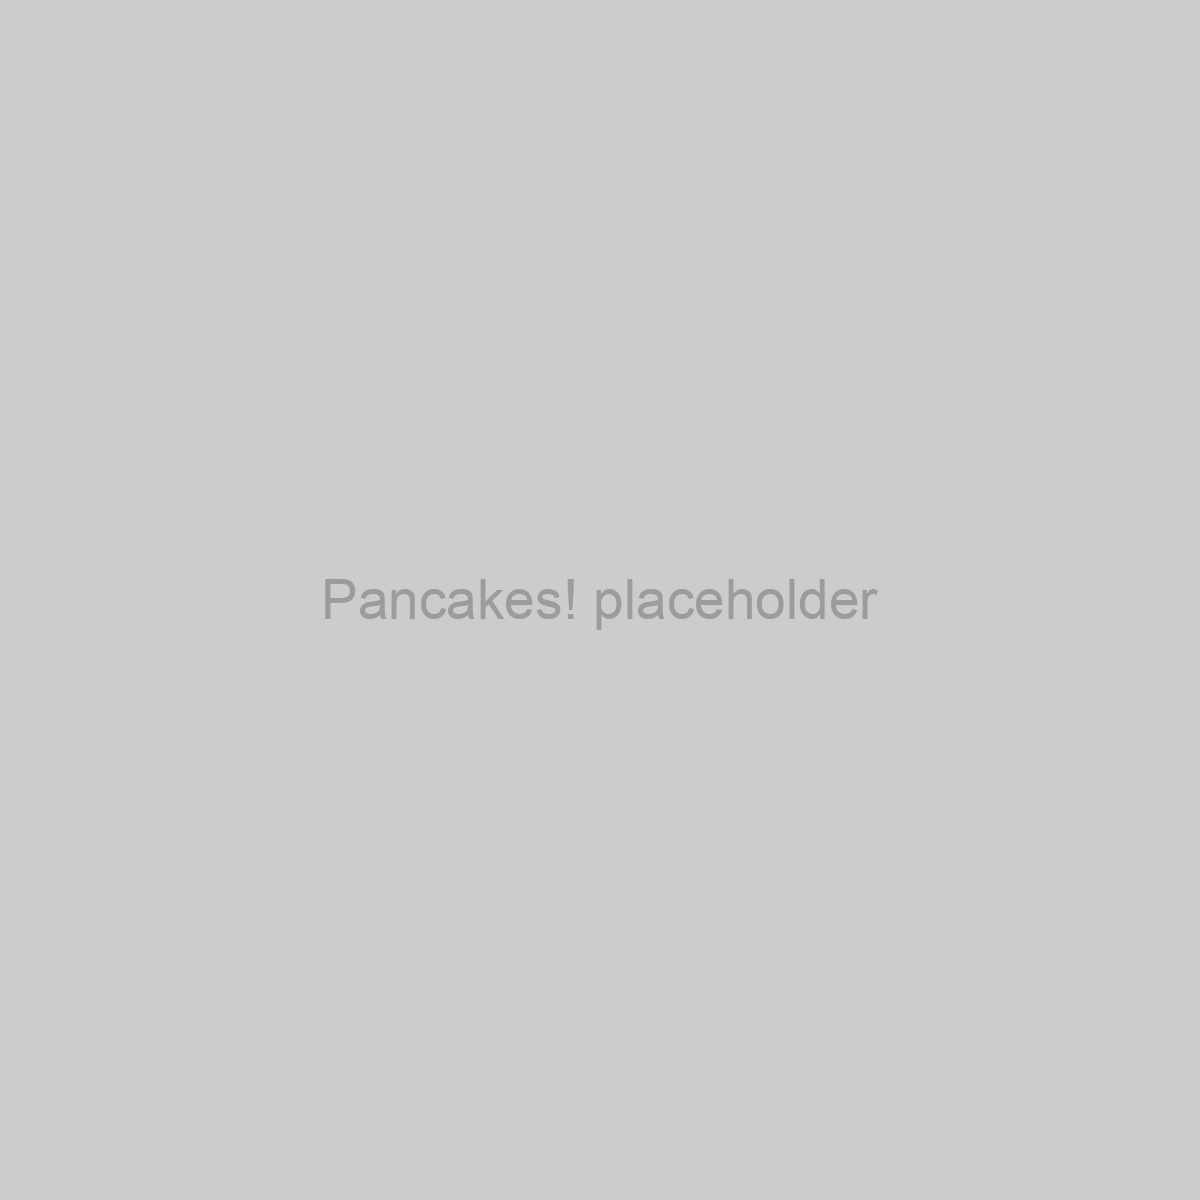 Pancakes! Placeholder Image